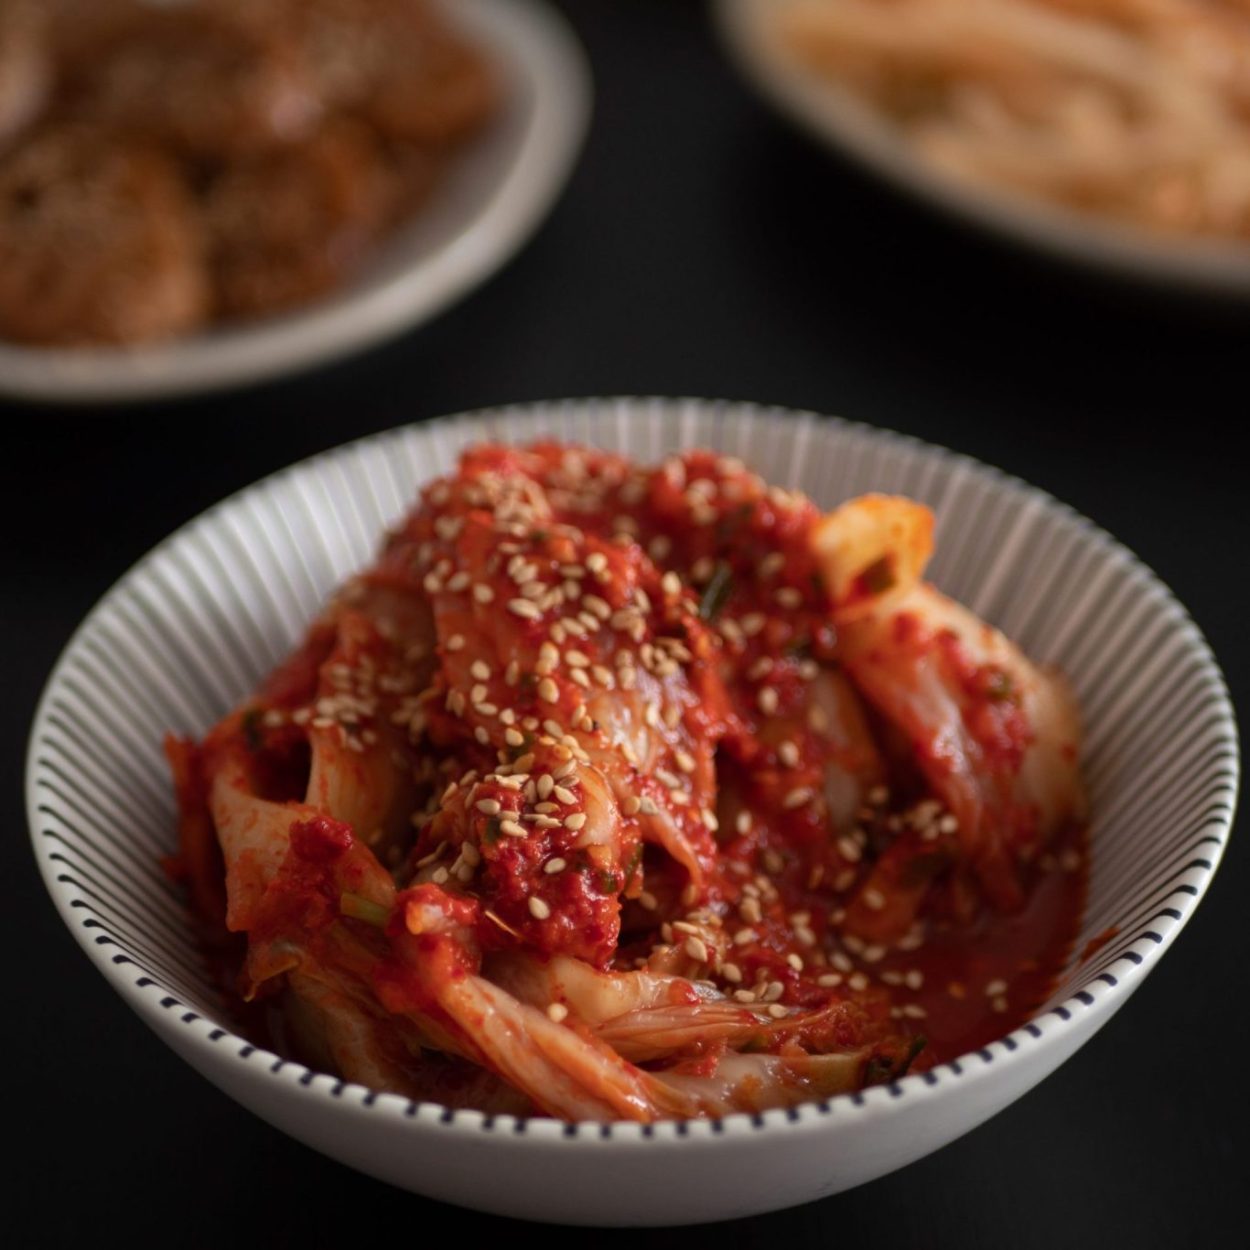 Kimchi traditionnel- Chou chinois fermenté - Recette coréenne